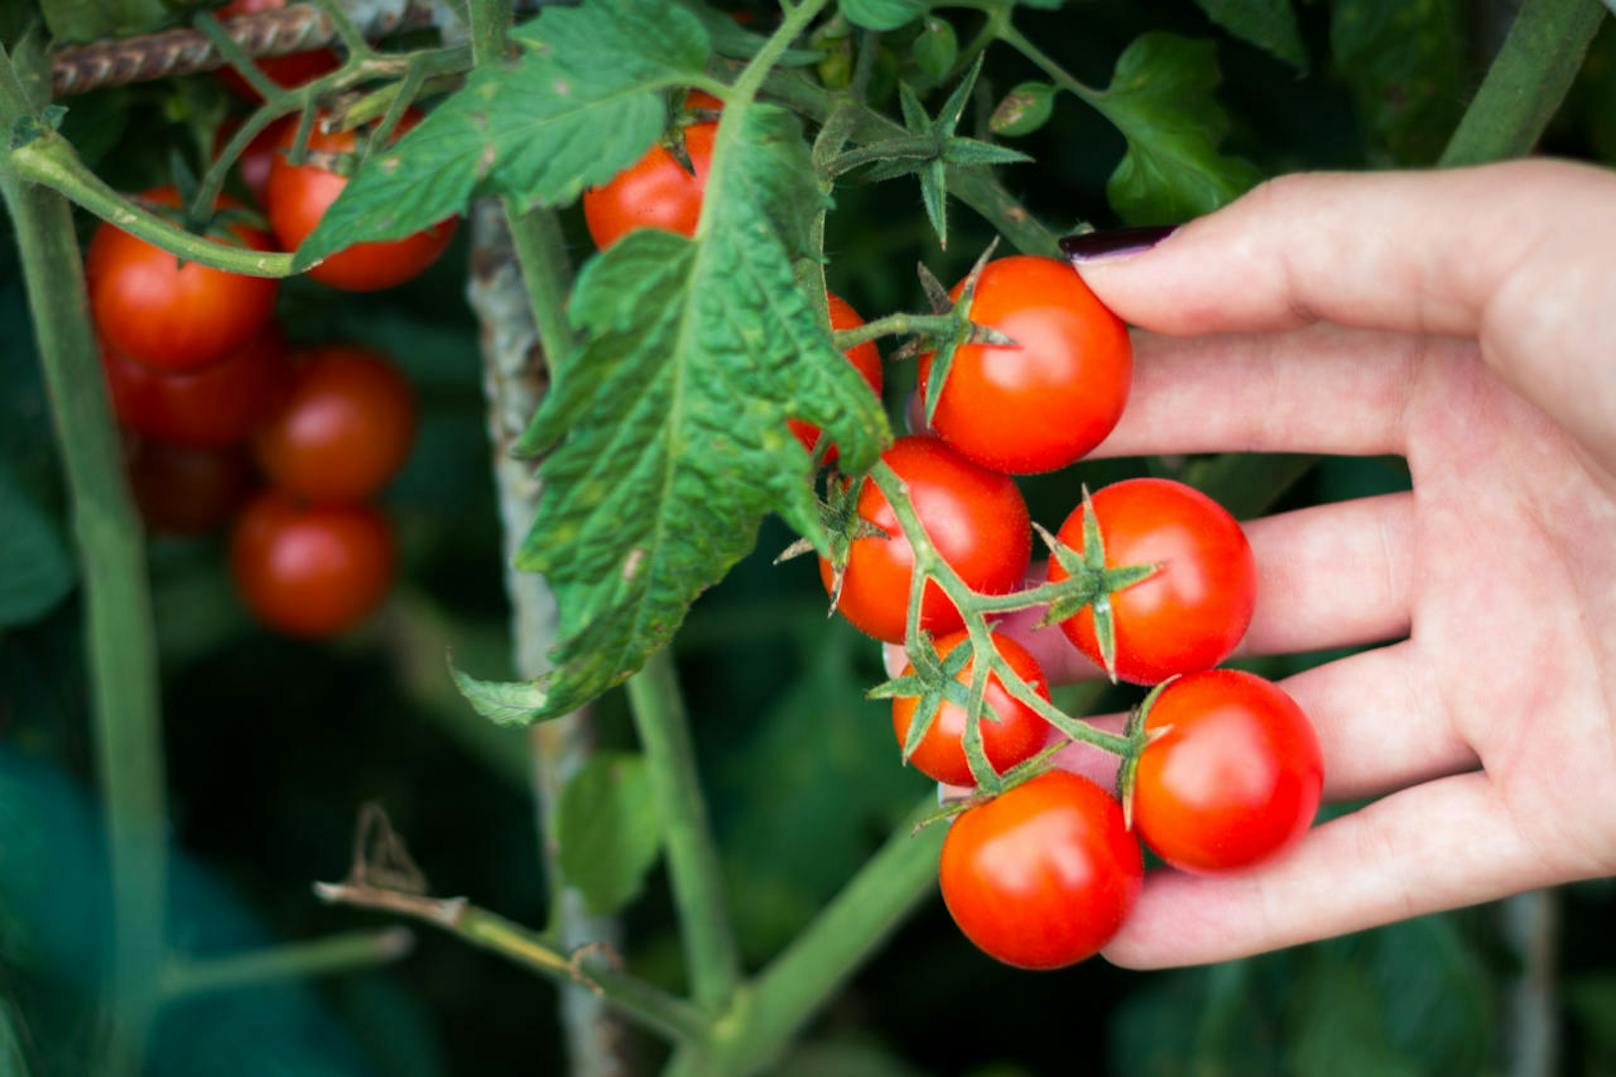 Tomaten enthalten neben Vitamin C und Nährstoffen wie Kalium, auch Lycopin. Der Farbstoff, der zu den Carotinoiden zählt, kann Stoffwechsel-, Herz-Kreislauf-Erkrankungen und Krebs vorbeugen und das Schlaganfall-Risiko senken. Zudem soll er vor Sonnenbrand schützen. Wichtig: Lycopin wird aus verarbeiteten Tomaten besser verwertet, deshalb sollte man Tomaten nicht nur roh essen.